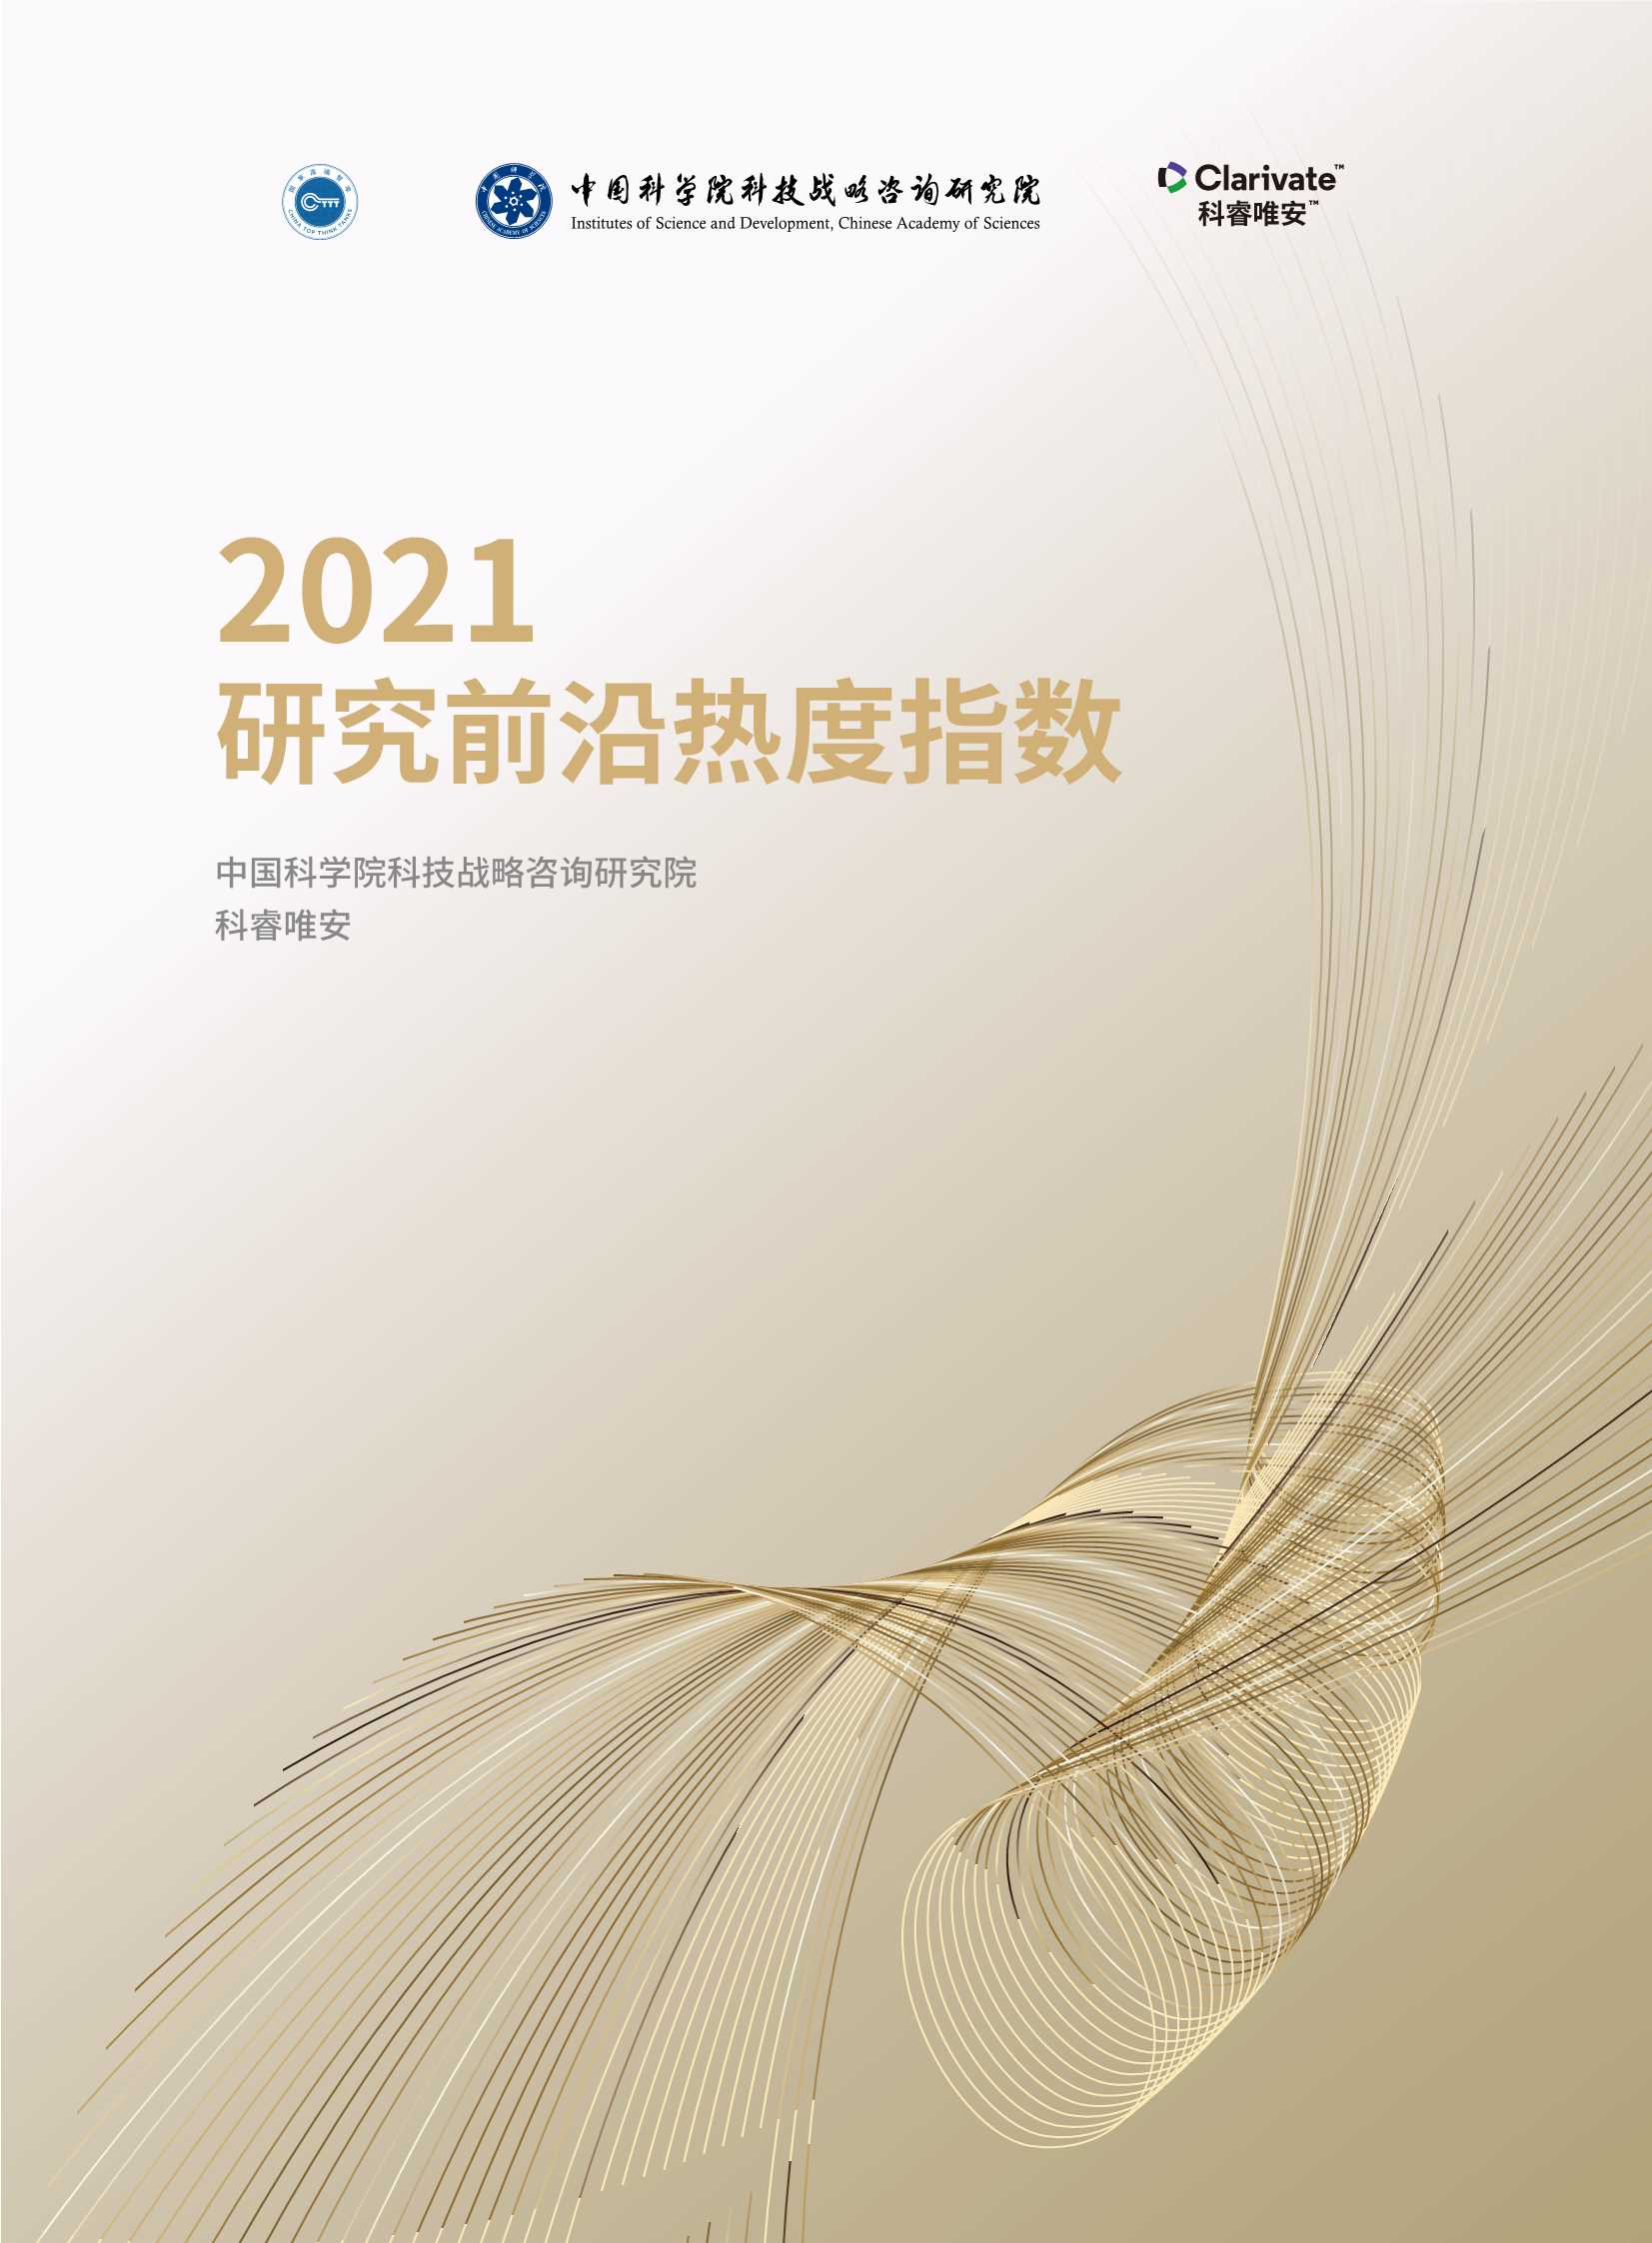 中科院-2021研究前沿热度指数报告-2021.12-52页